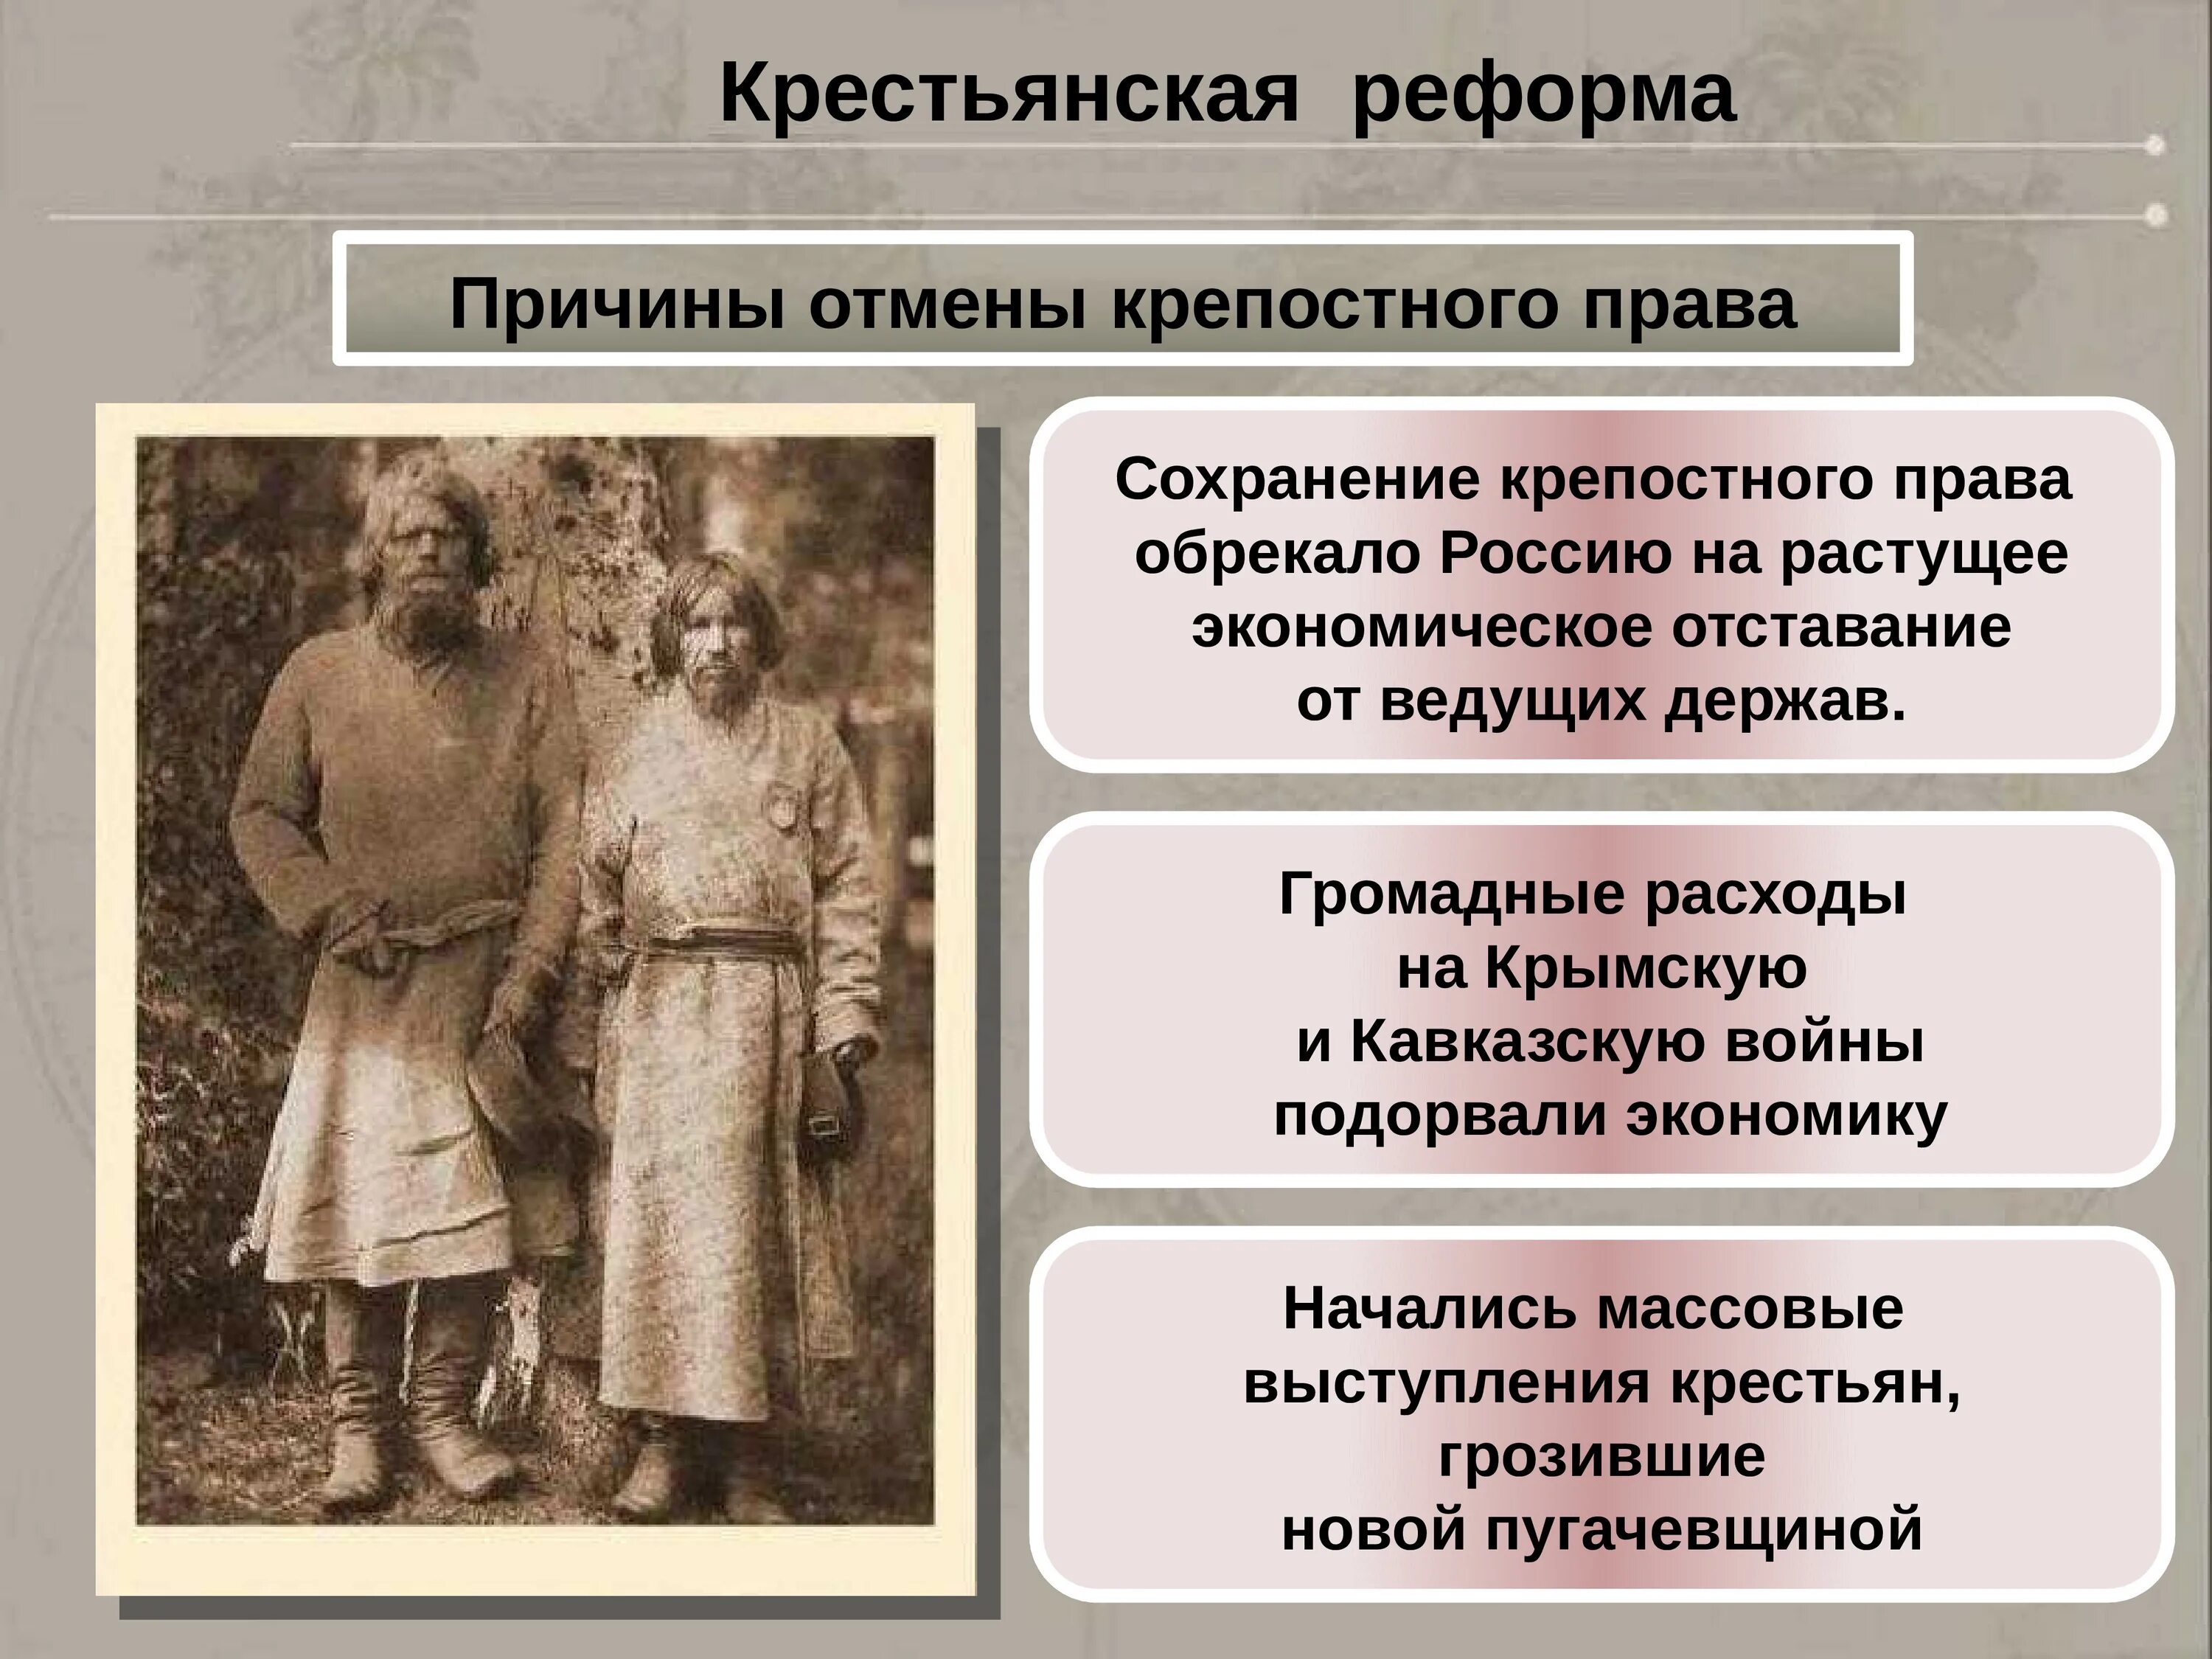 Крепостное право сущность. Крепостное право в России 19 века.